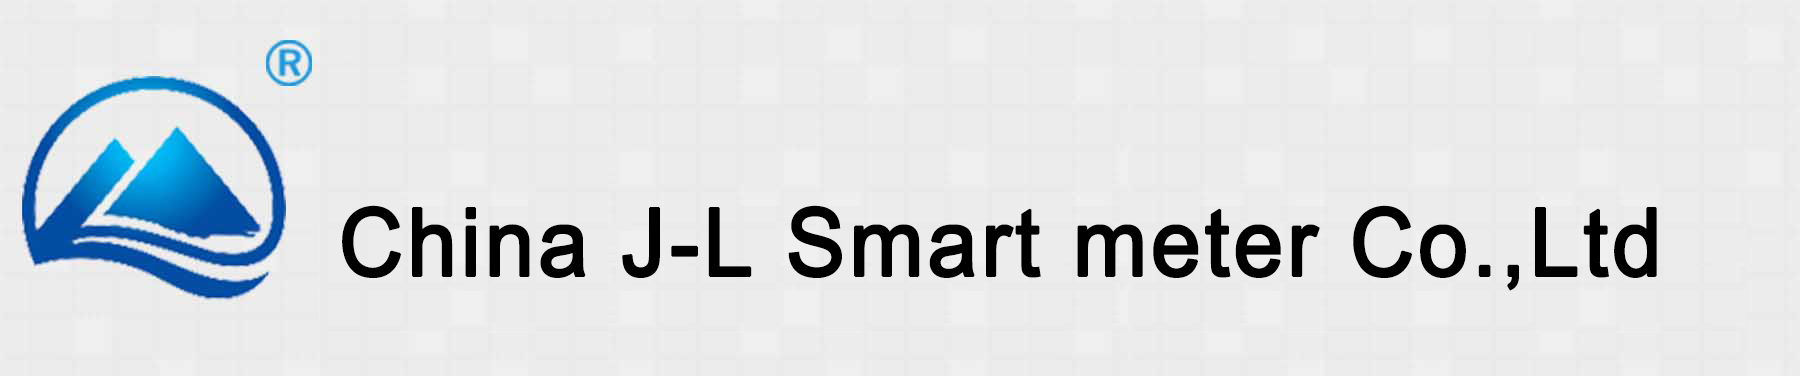 China J-L smart meter Co., Ltd